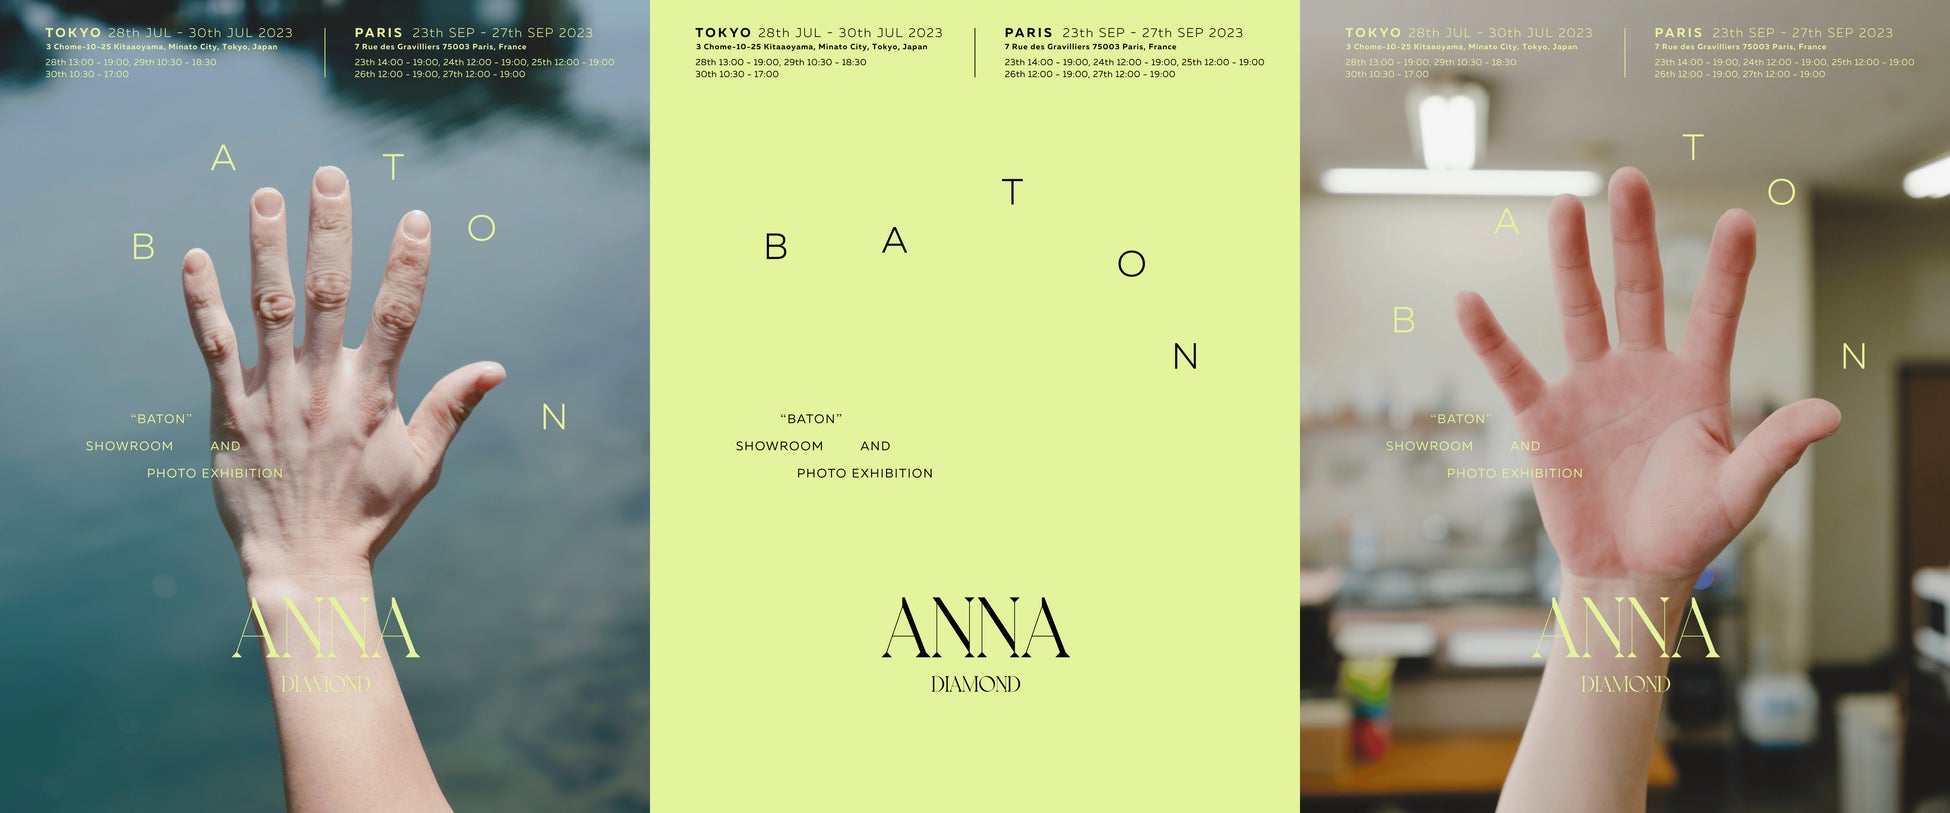 ANNA DIAMOND、東京とパリの2会場で展示会 ”BATON” を開催。